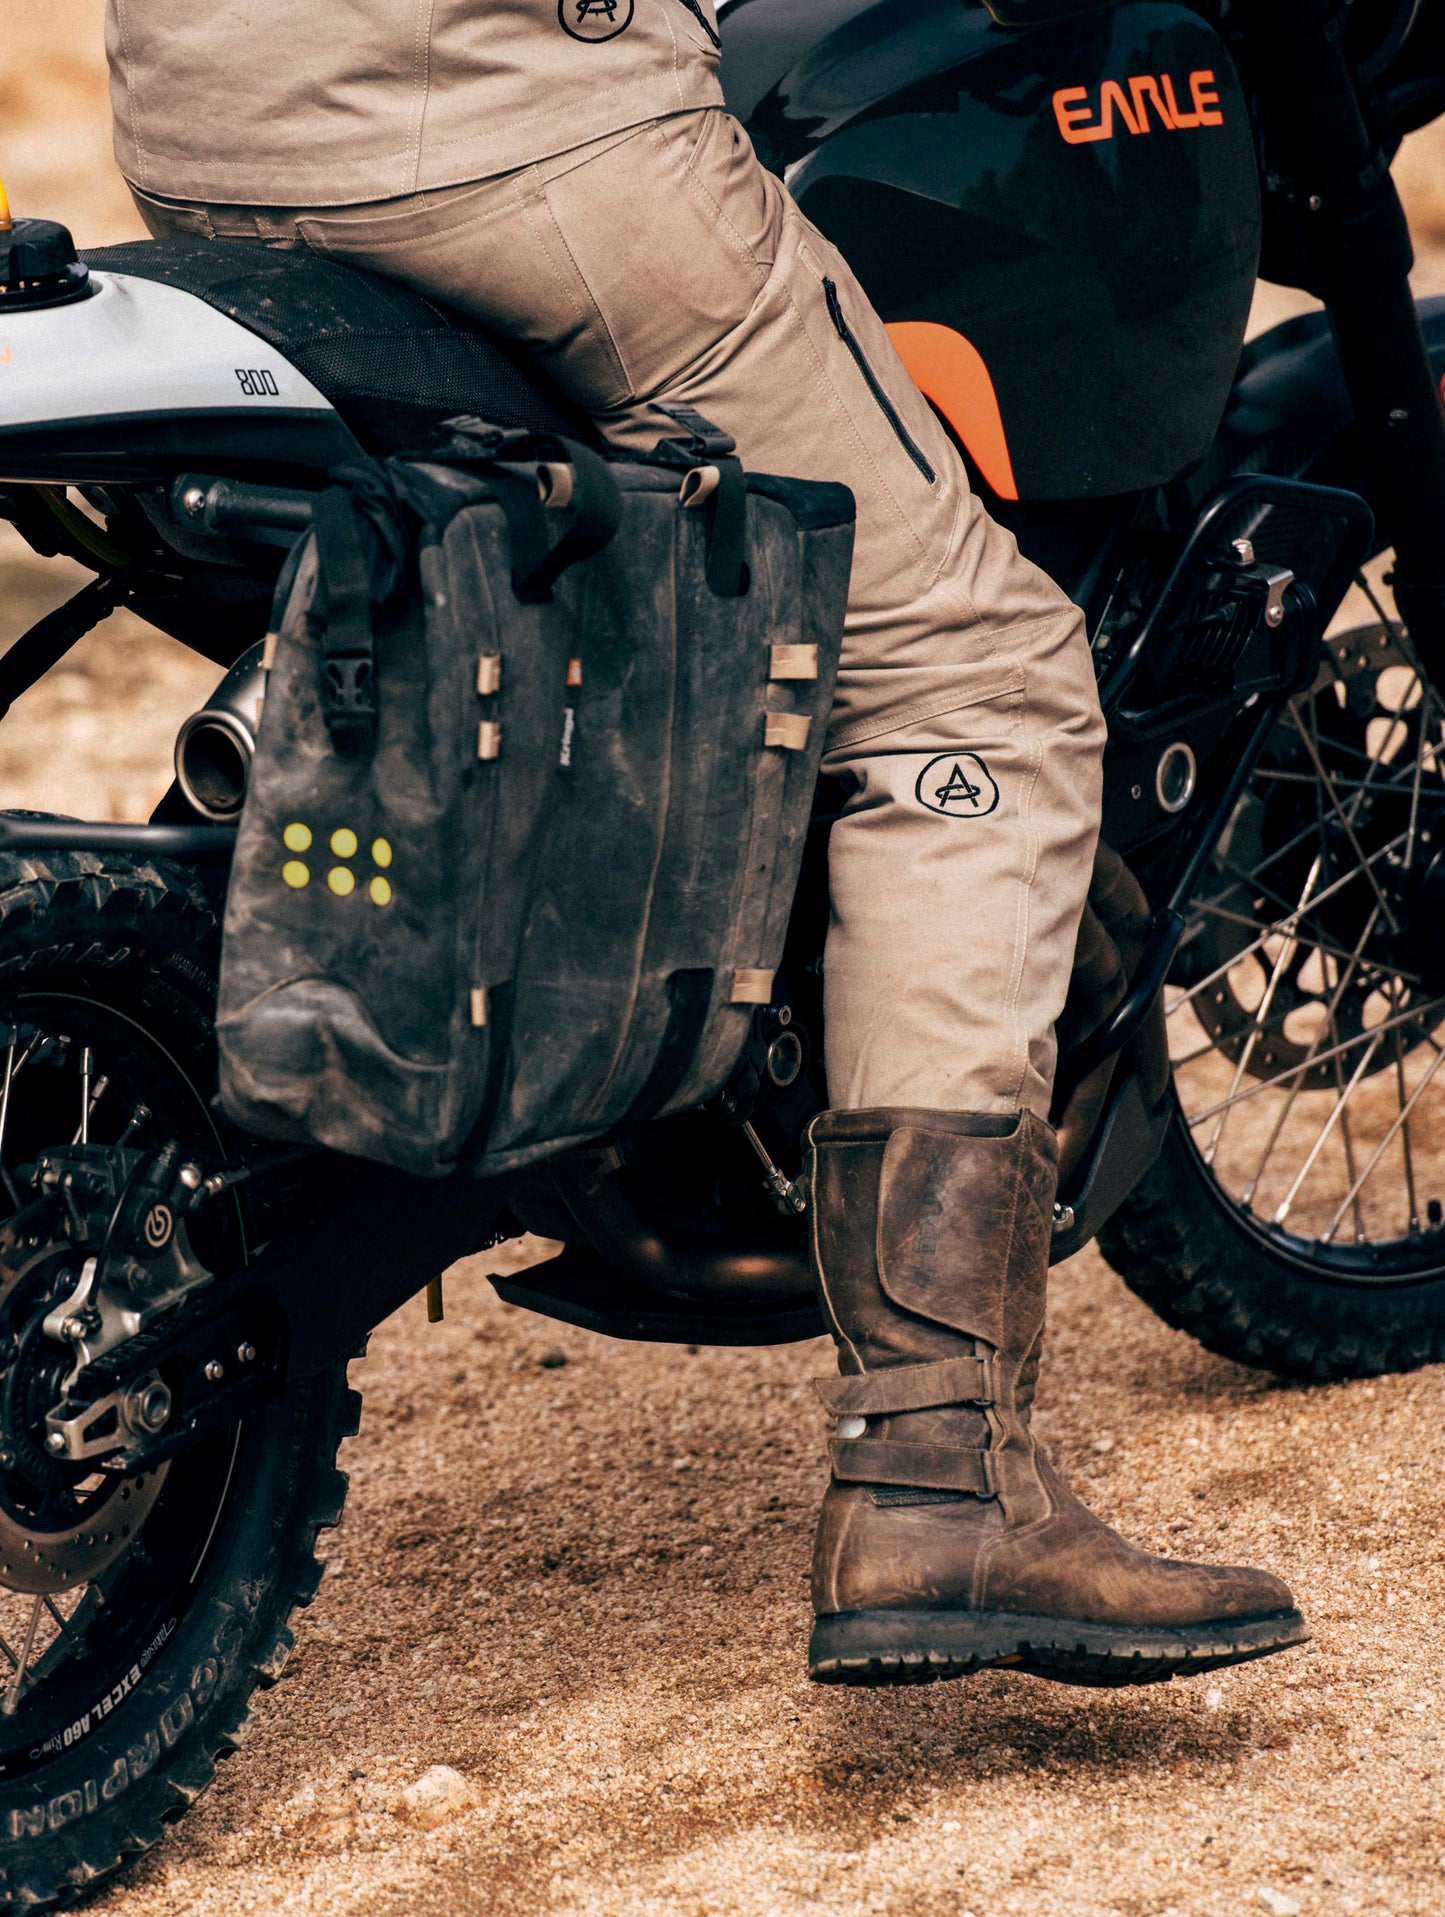 man wearing tan pants sitting on motorcycle